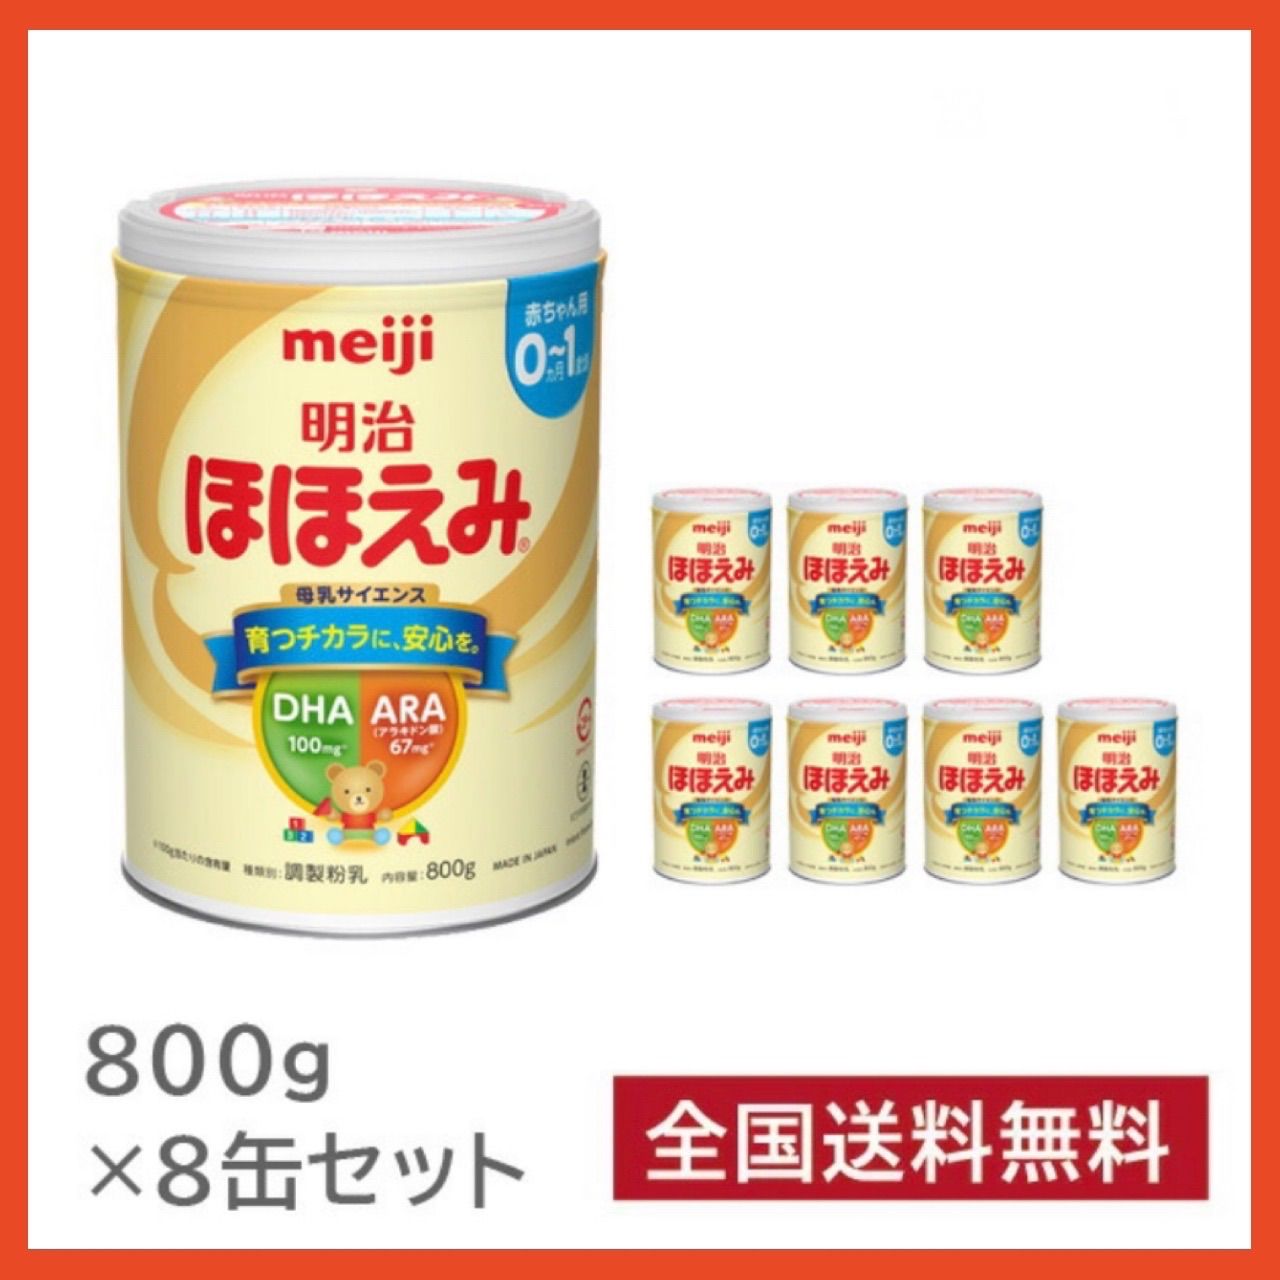 世界の人気ブランド スピード発送 明治ほほえみミルク 800g 8缶 送料